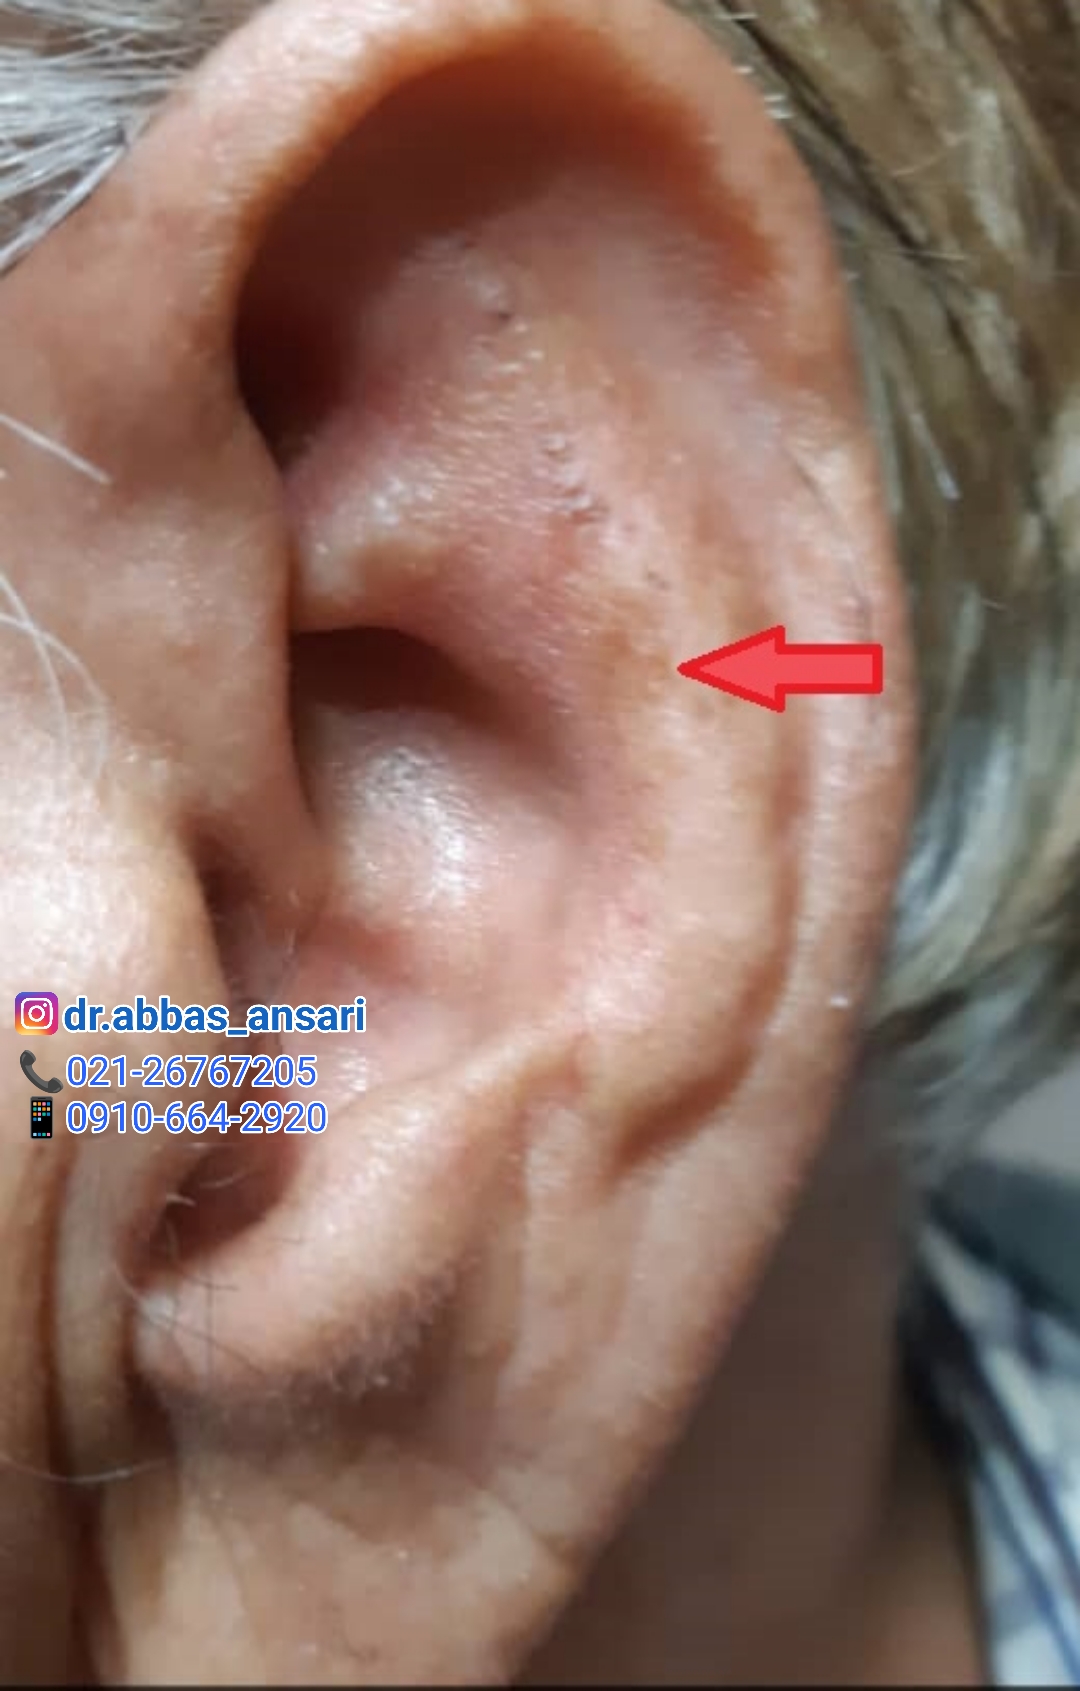 لکه روی گوش نشانه چیست؟ تشخیص از طریق گوش- طب سوزنی دکتر انصاری